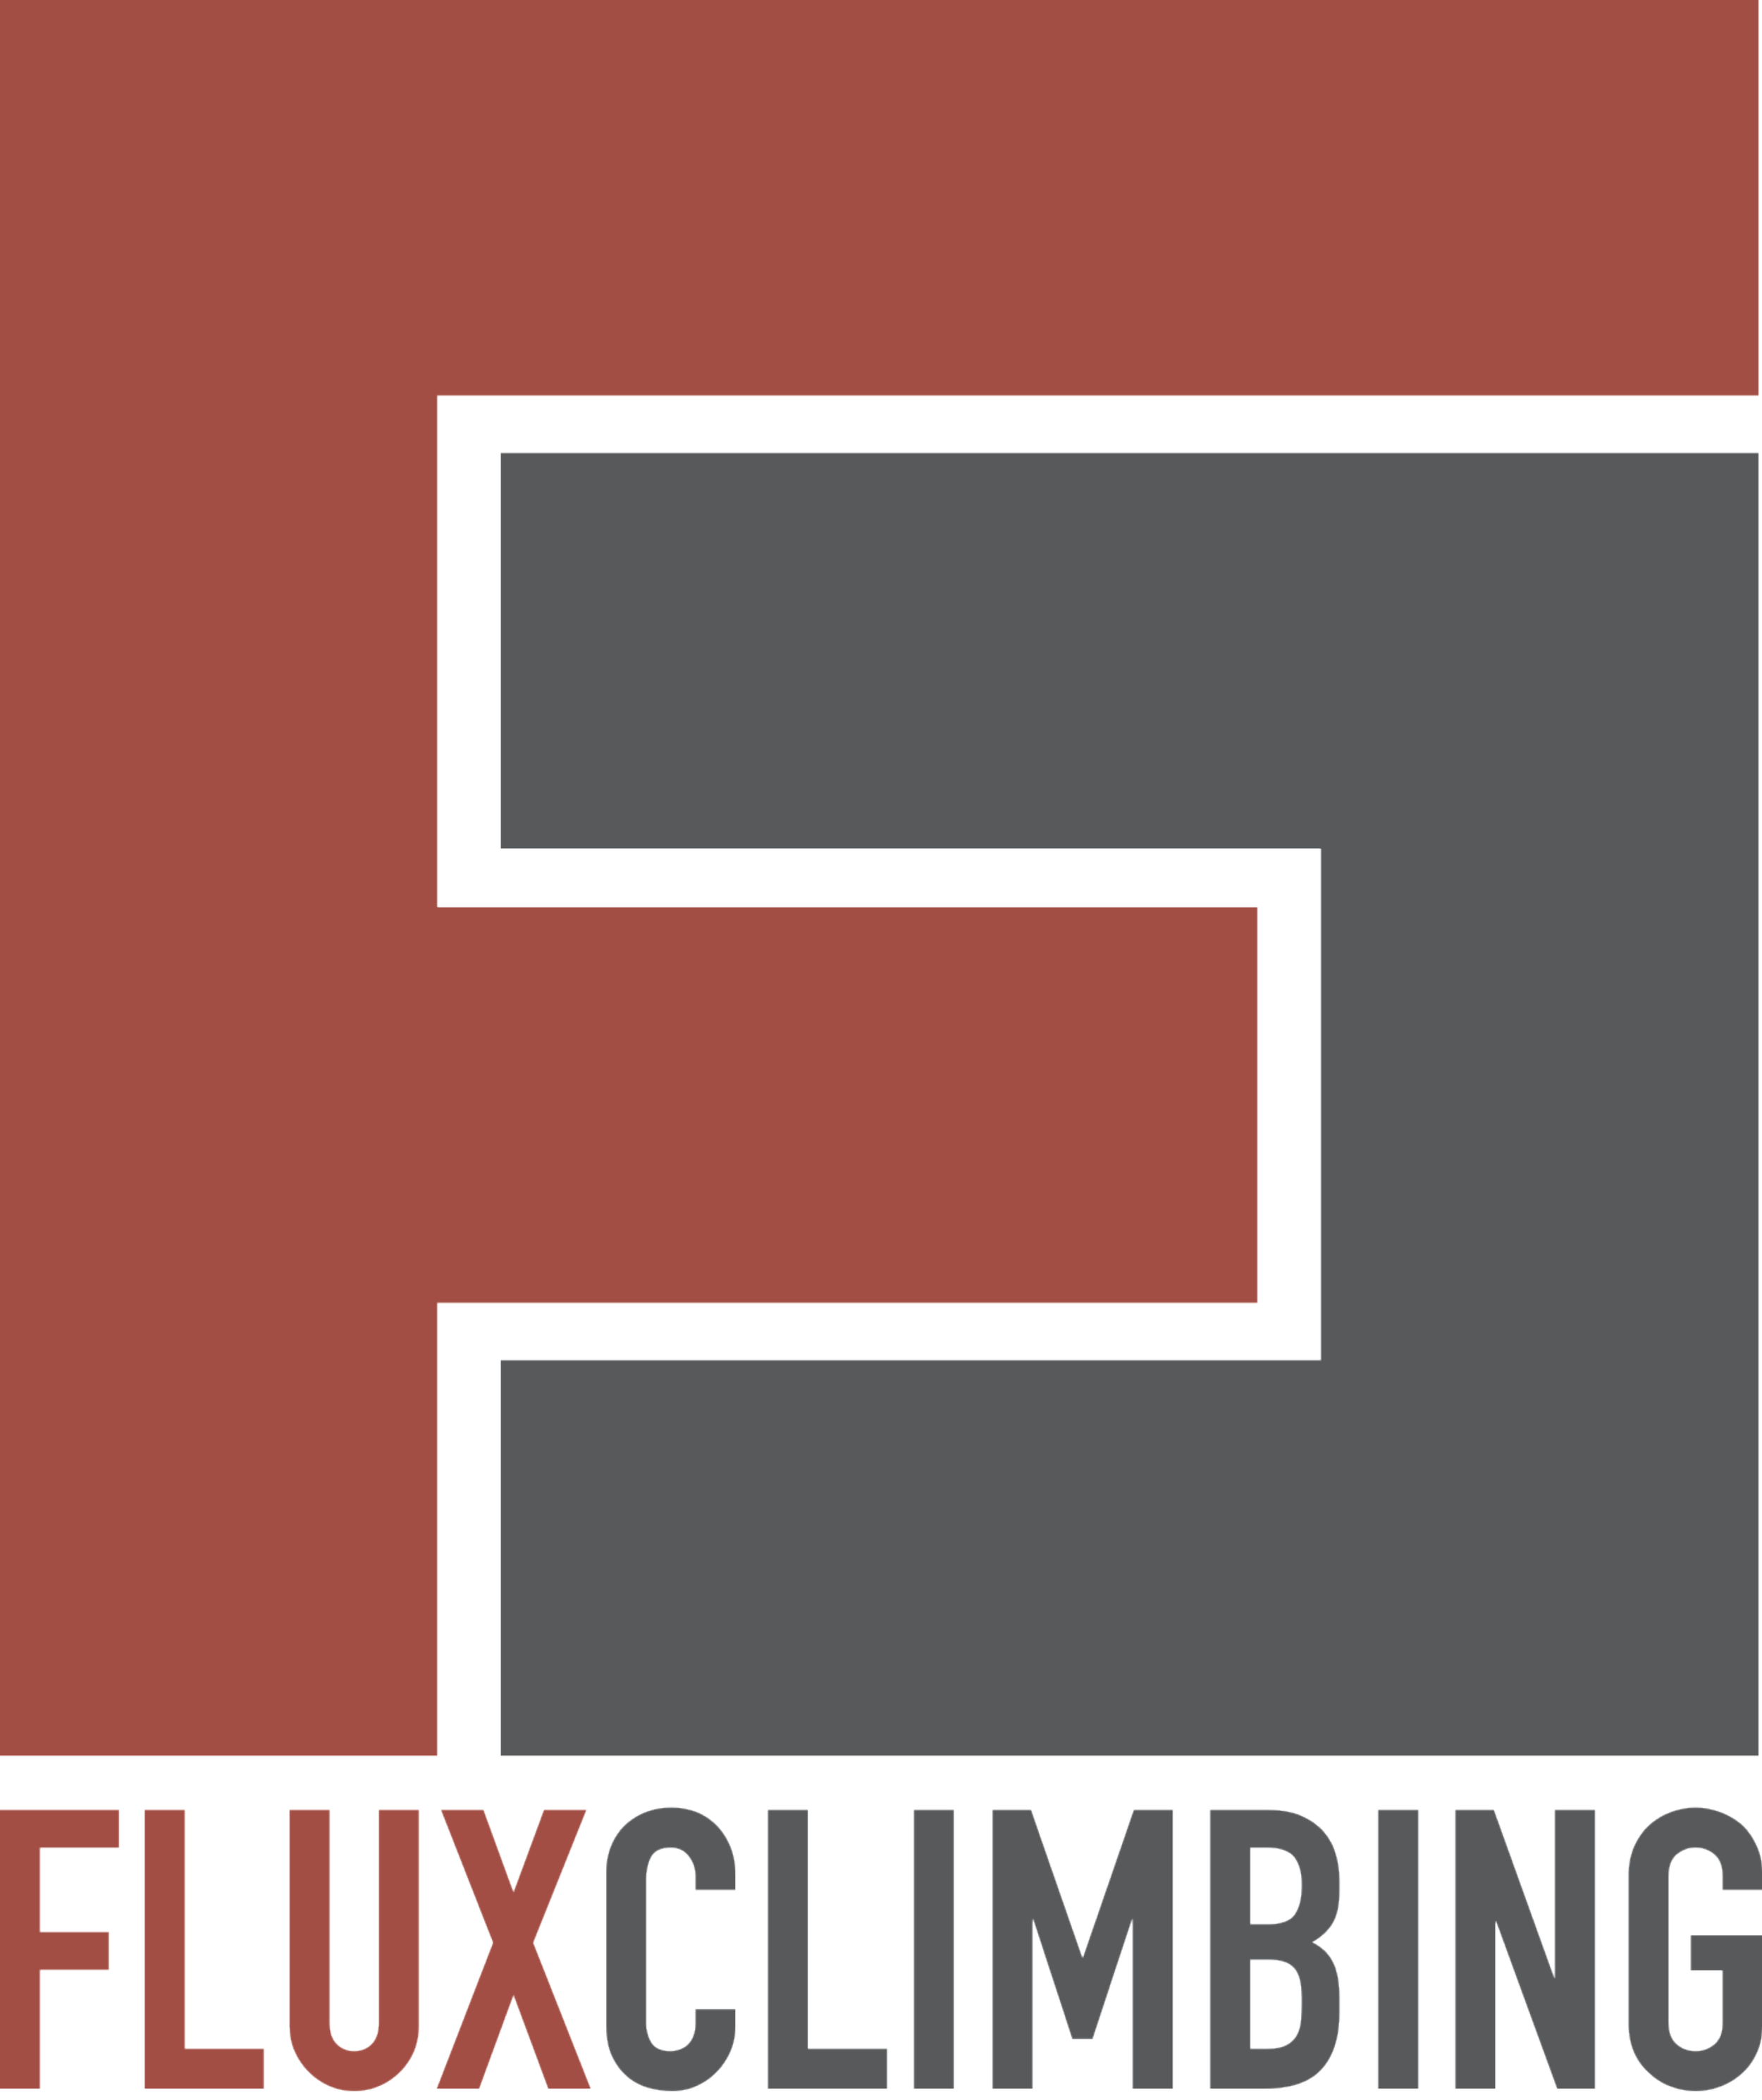 FLUX Climbing logo.png